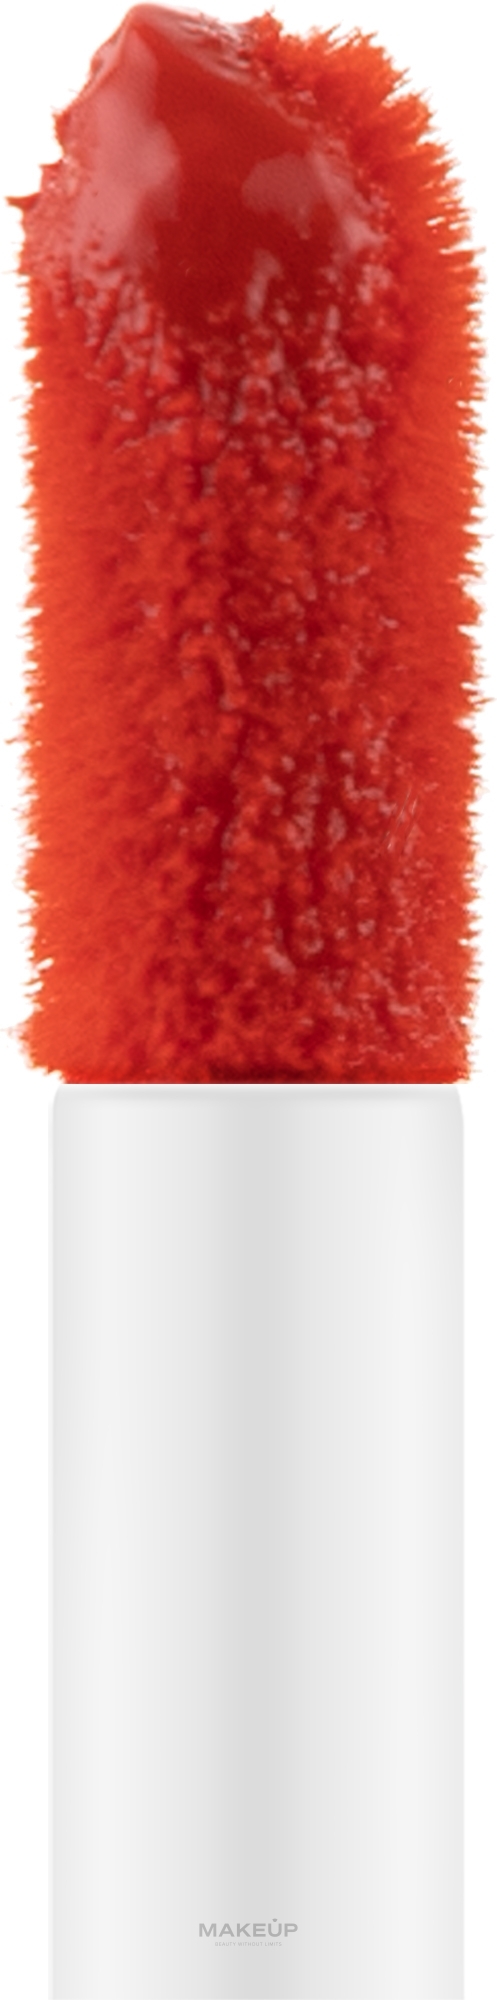 Рідка матова помада - Huda Beauty Liquid Matte Lipstick — фото Alluring